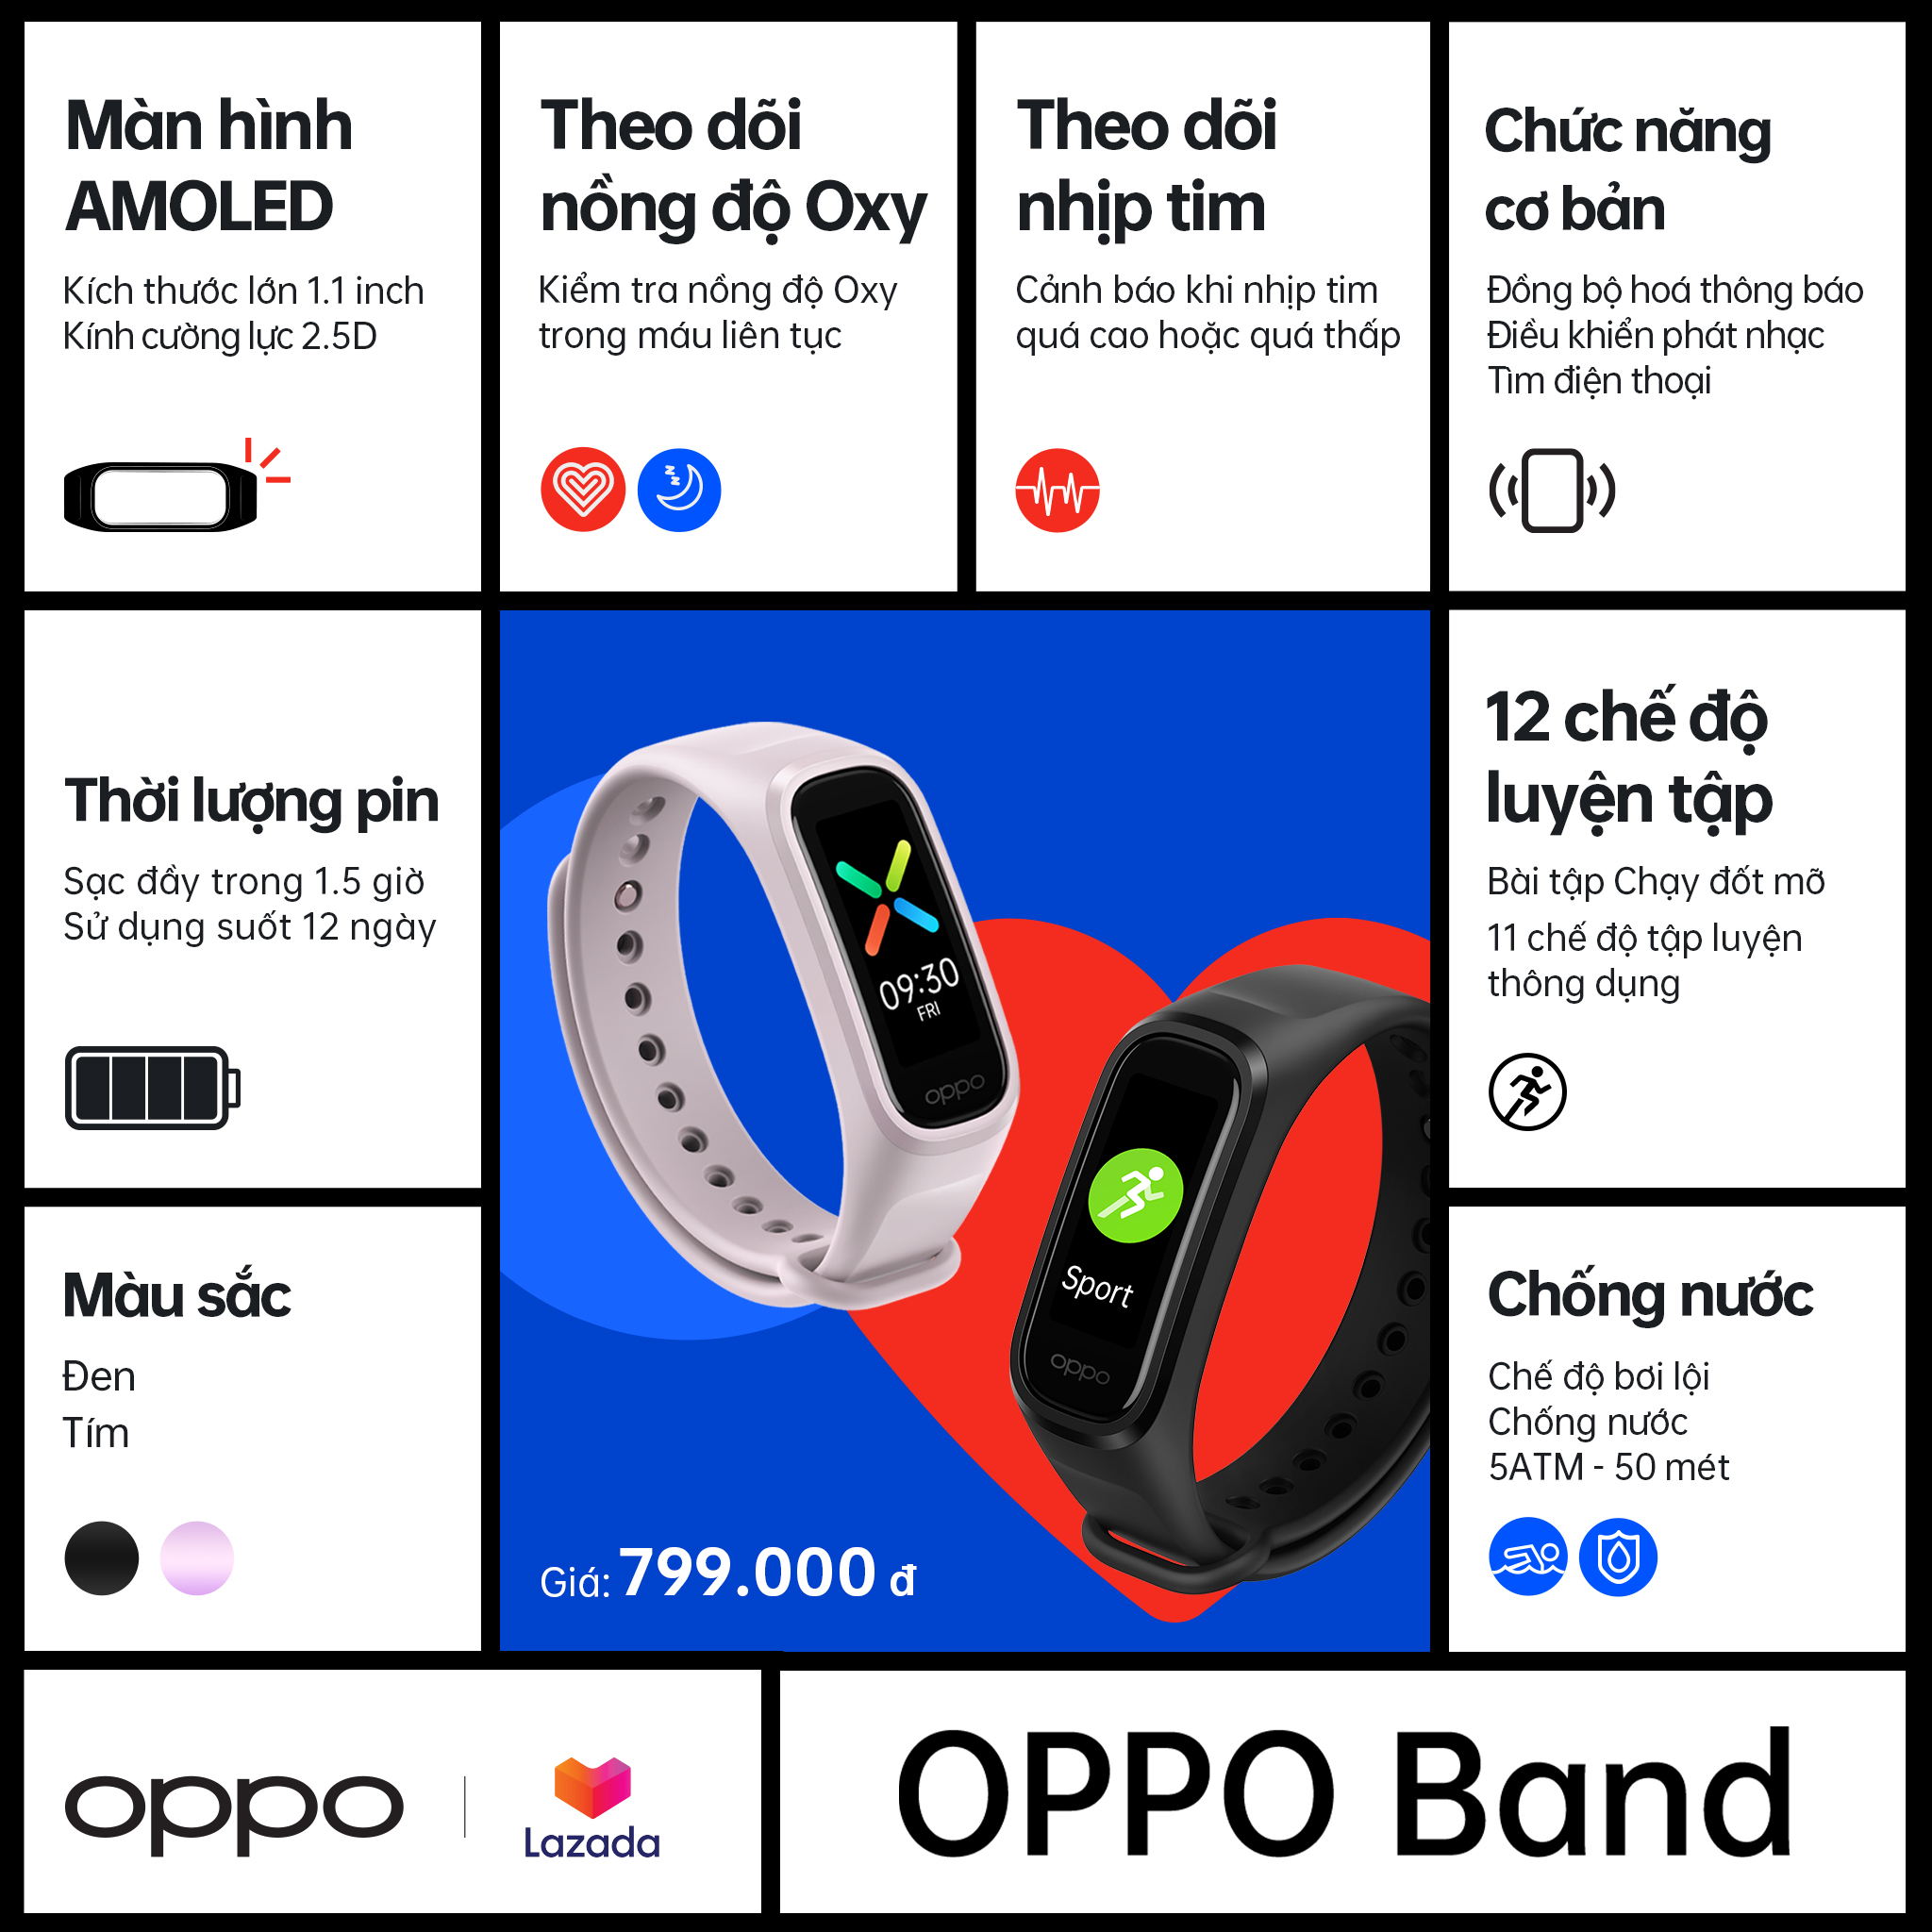 OPPO Band chính thức ra mắt tại Việt Nam: Theo dõi sức khỏe toàn diện với tính năng đo chỉ số SpO2 liên tục